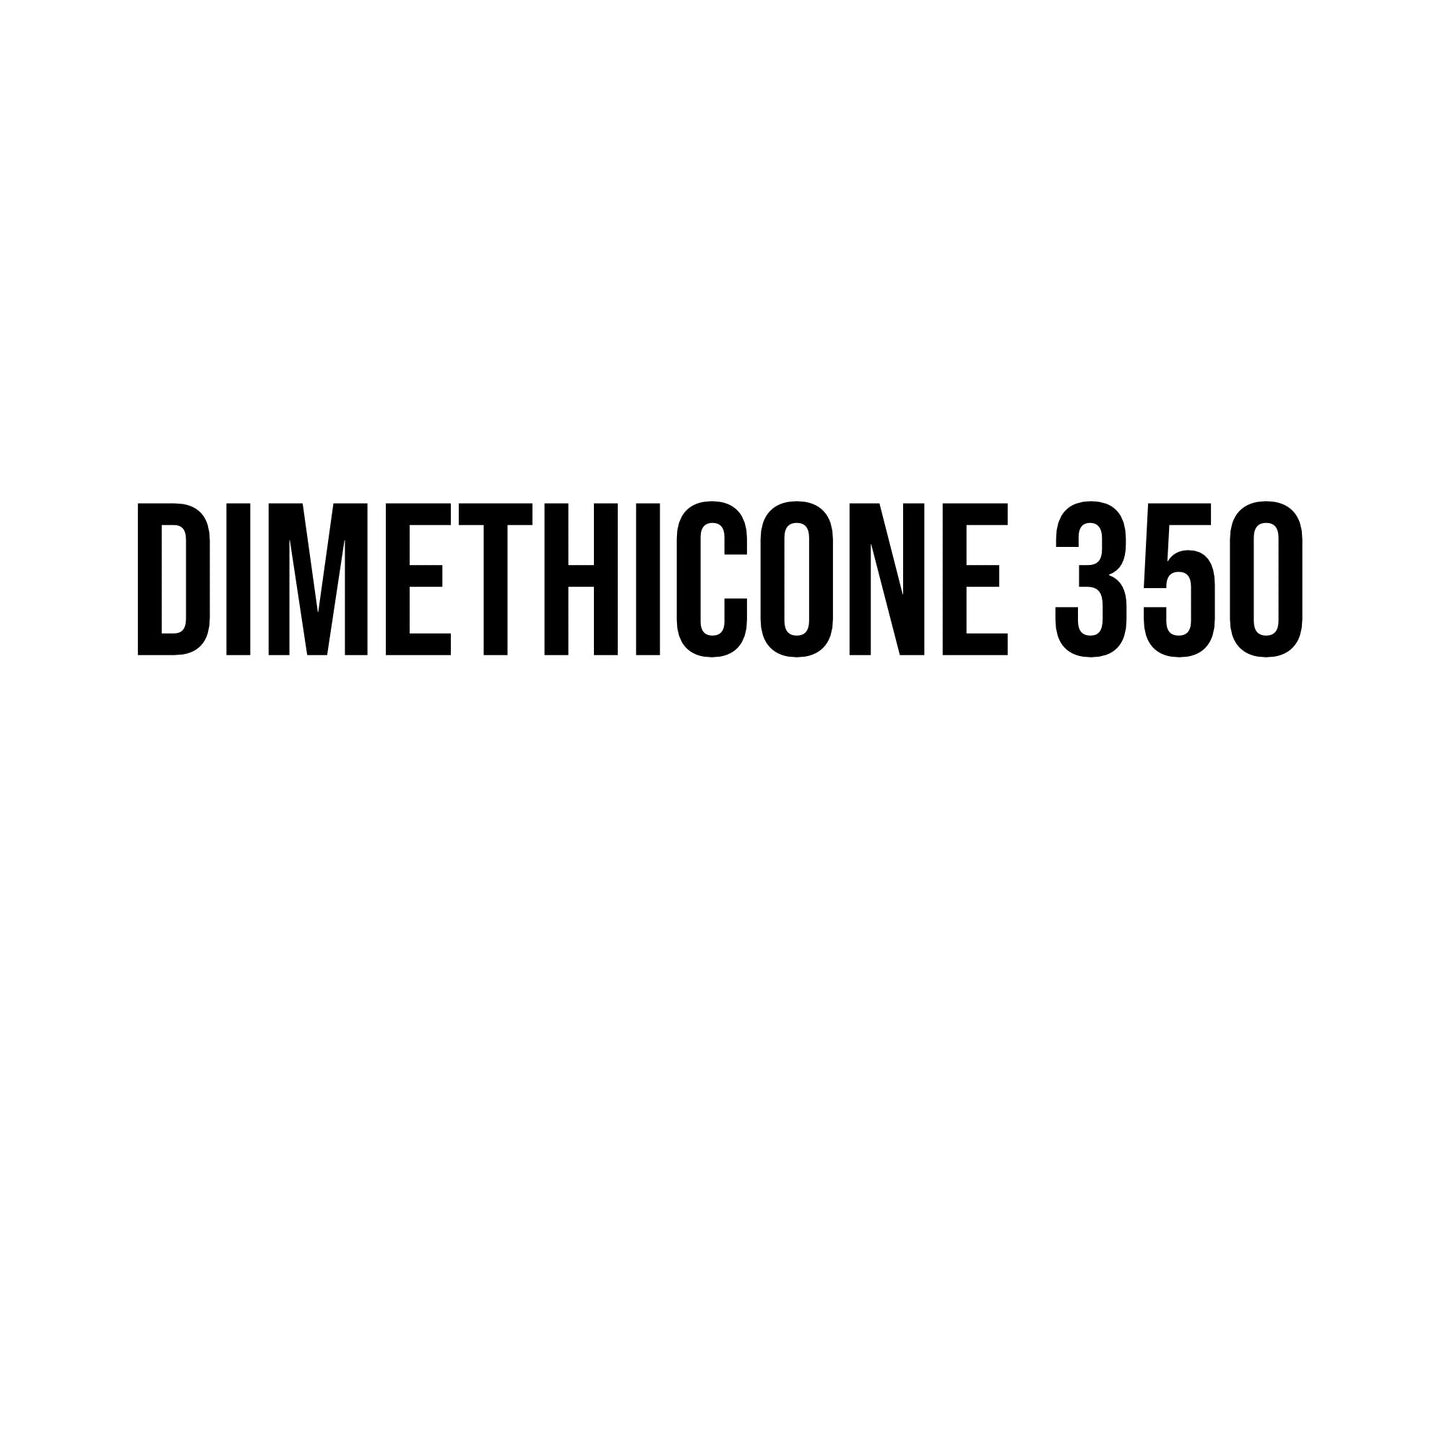 Dimethicone 350